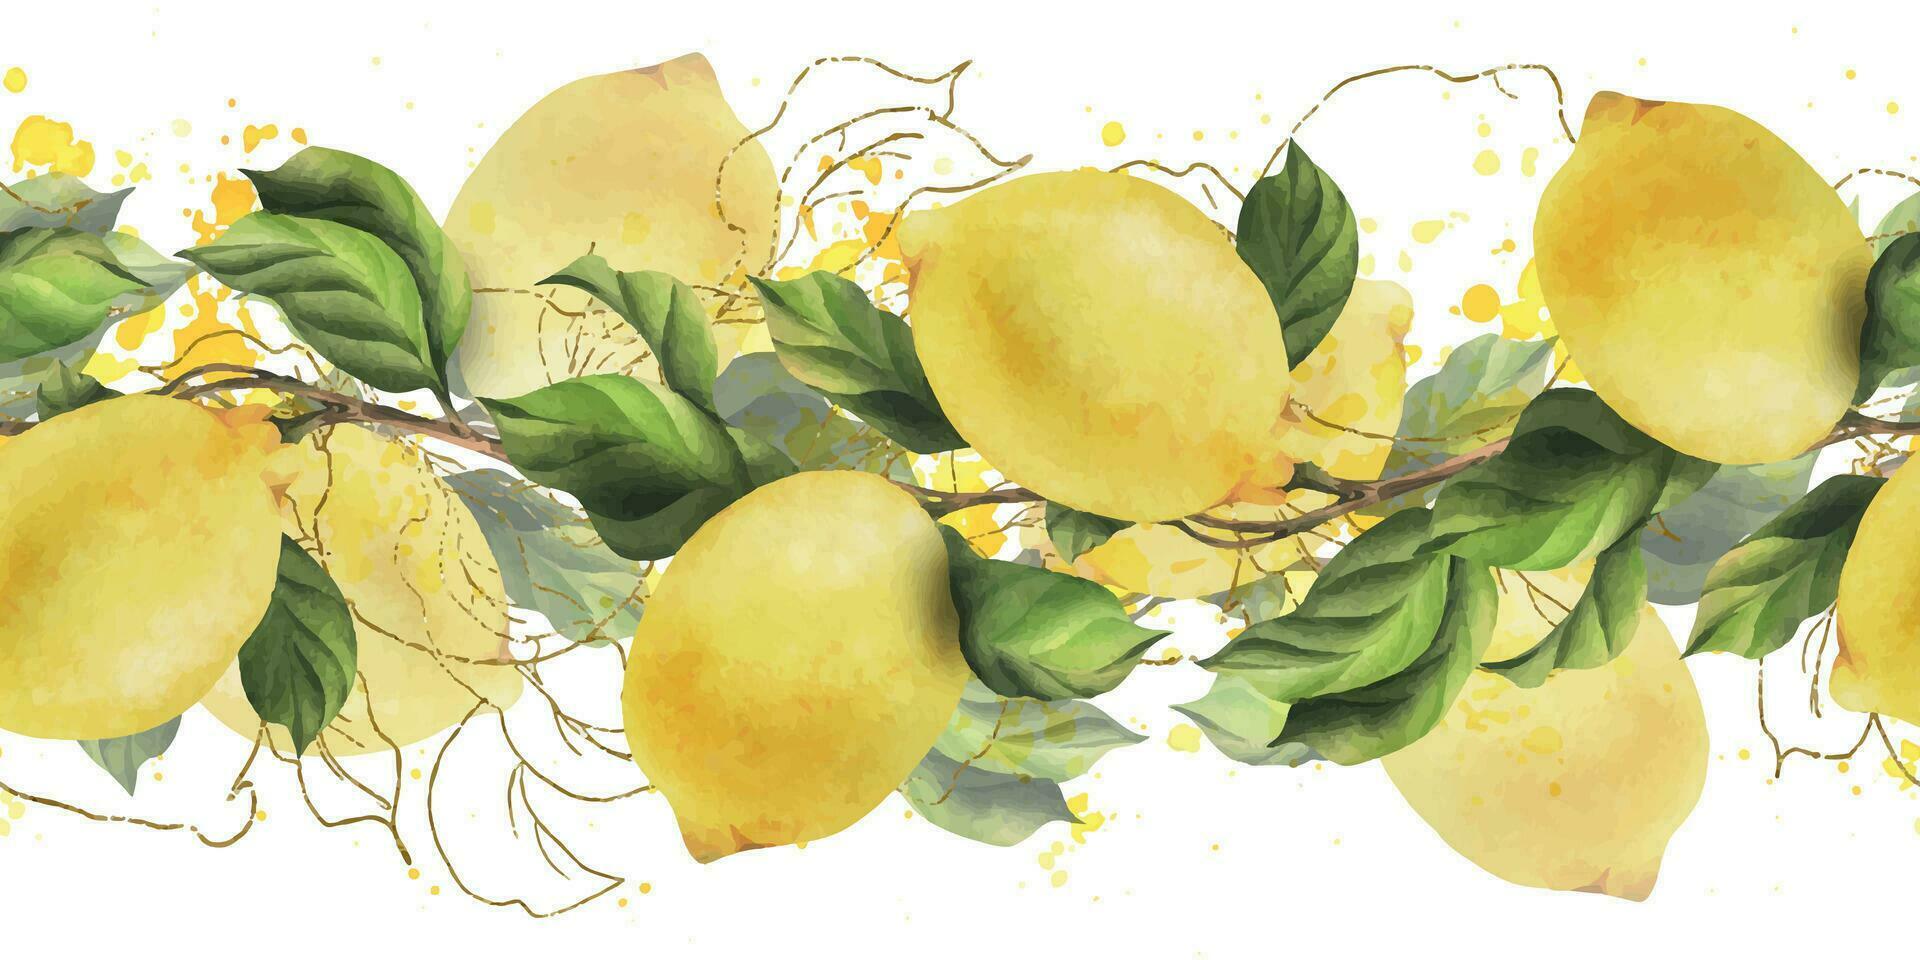 citroenen zijn geel, sappig, rijp met groen bladeren, bloem bloemknoppen Aan de takken, geheel. waterverf, hand- getrokken botanisch illustratie. naadloos grens Aan een wit achtergrond vector